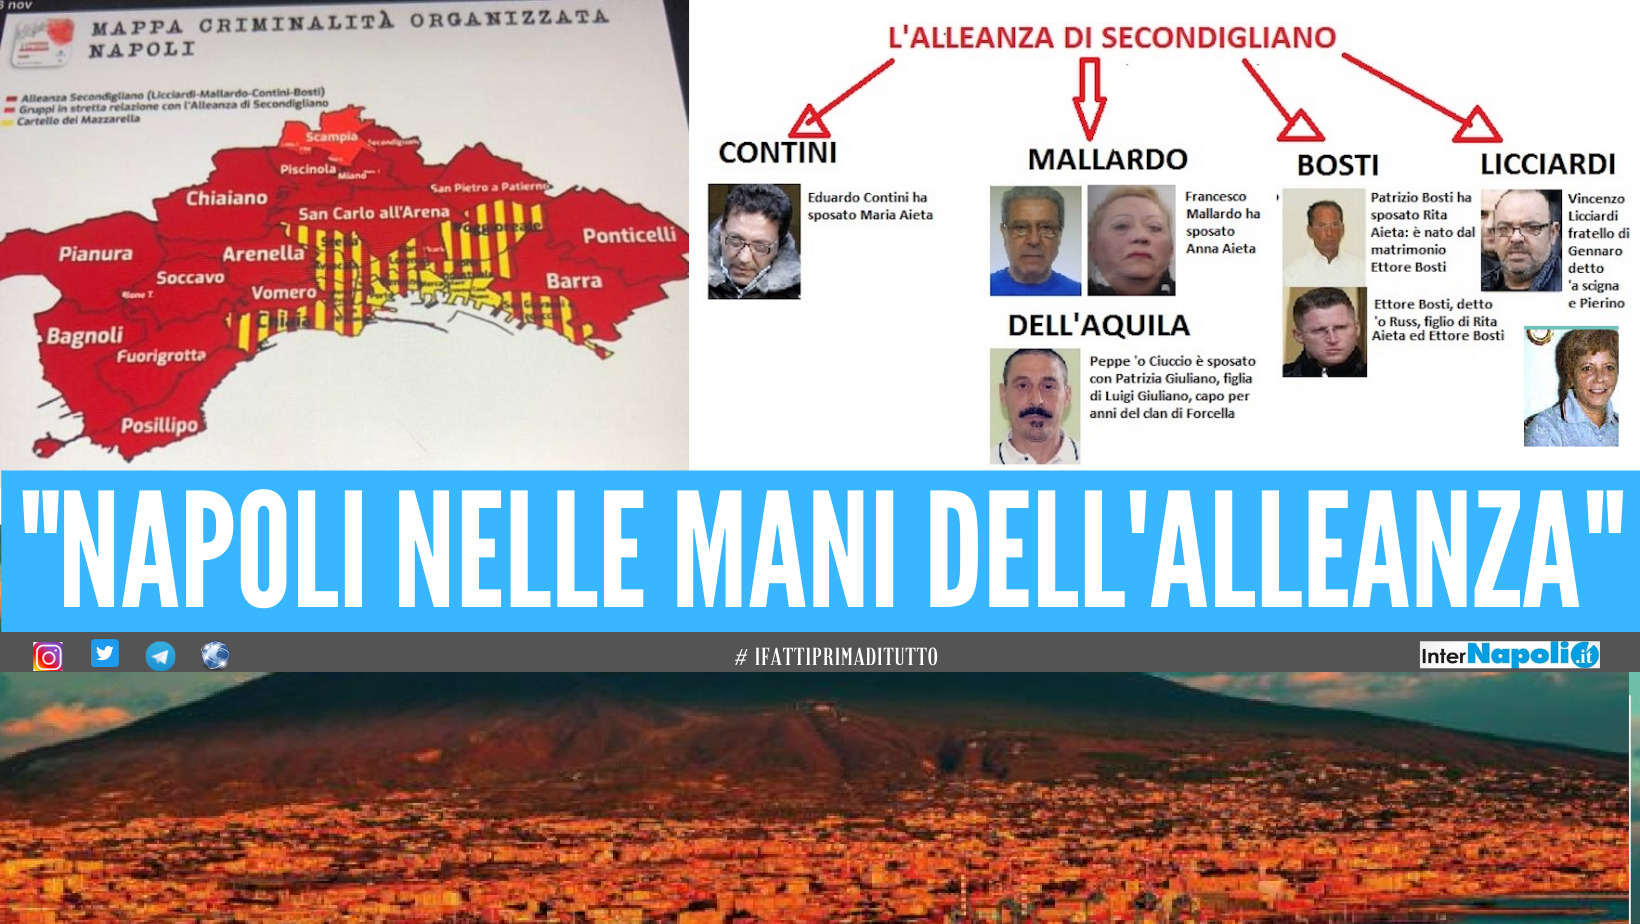 L’Alleanza di Secondigliano controlla la città di Napoli, la Procura certifica la potenza del cartello criminale